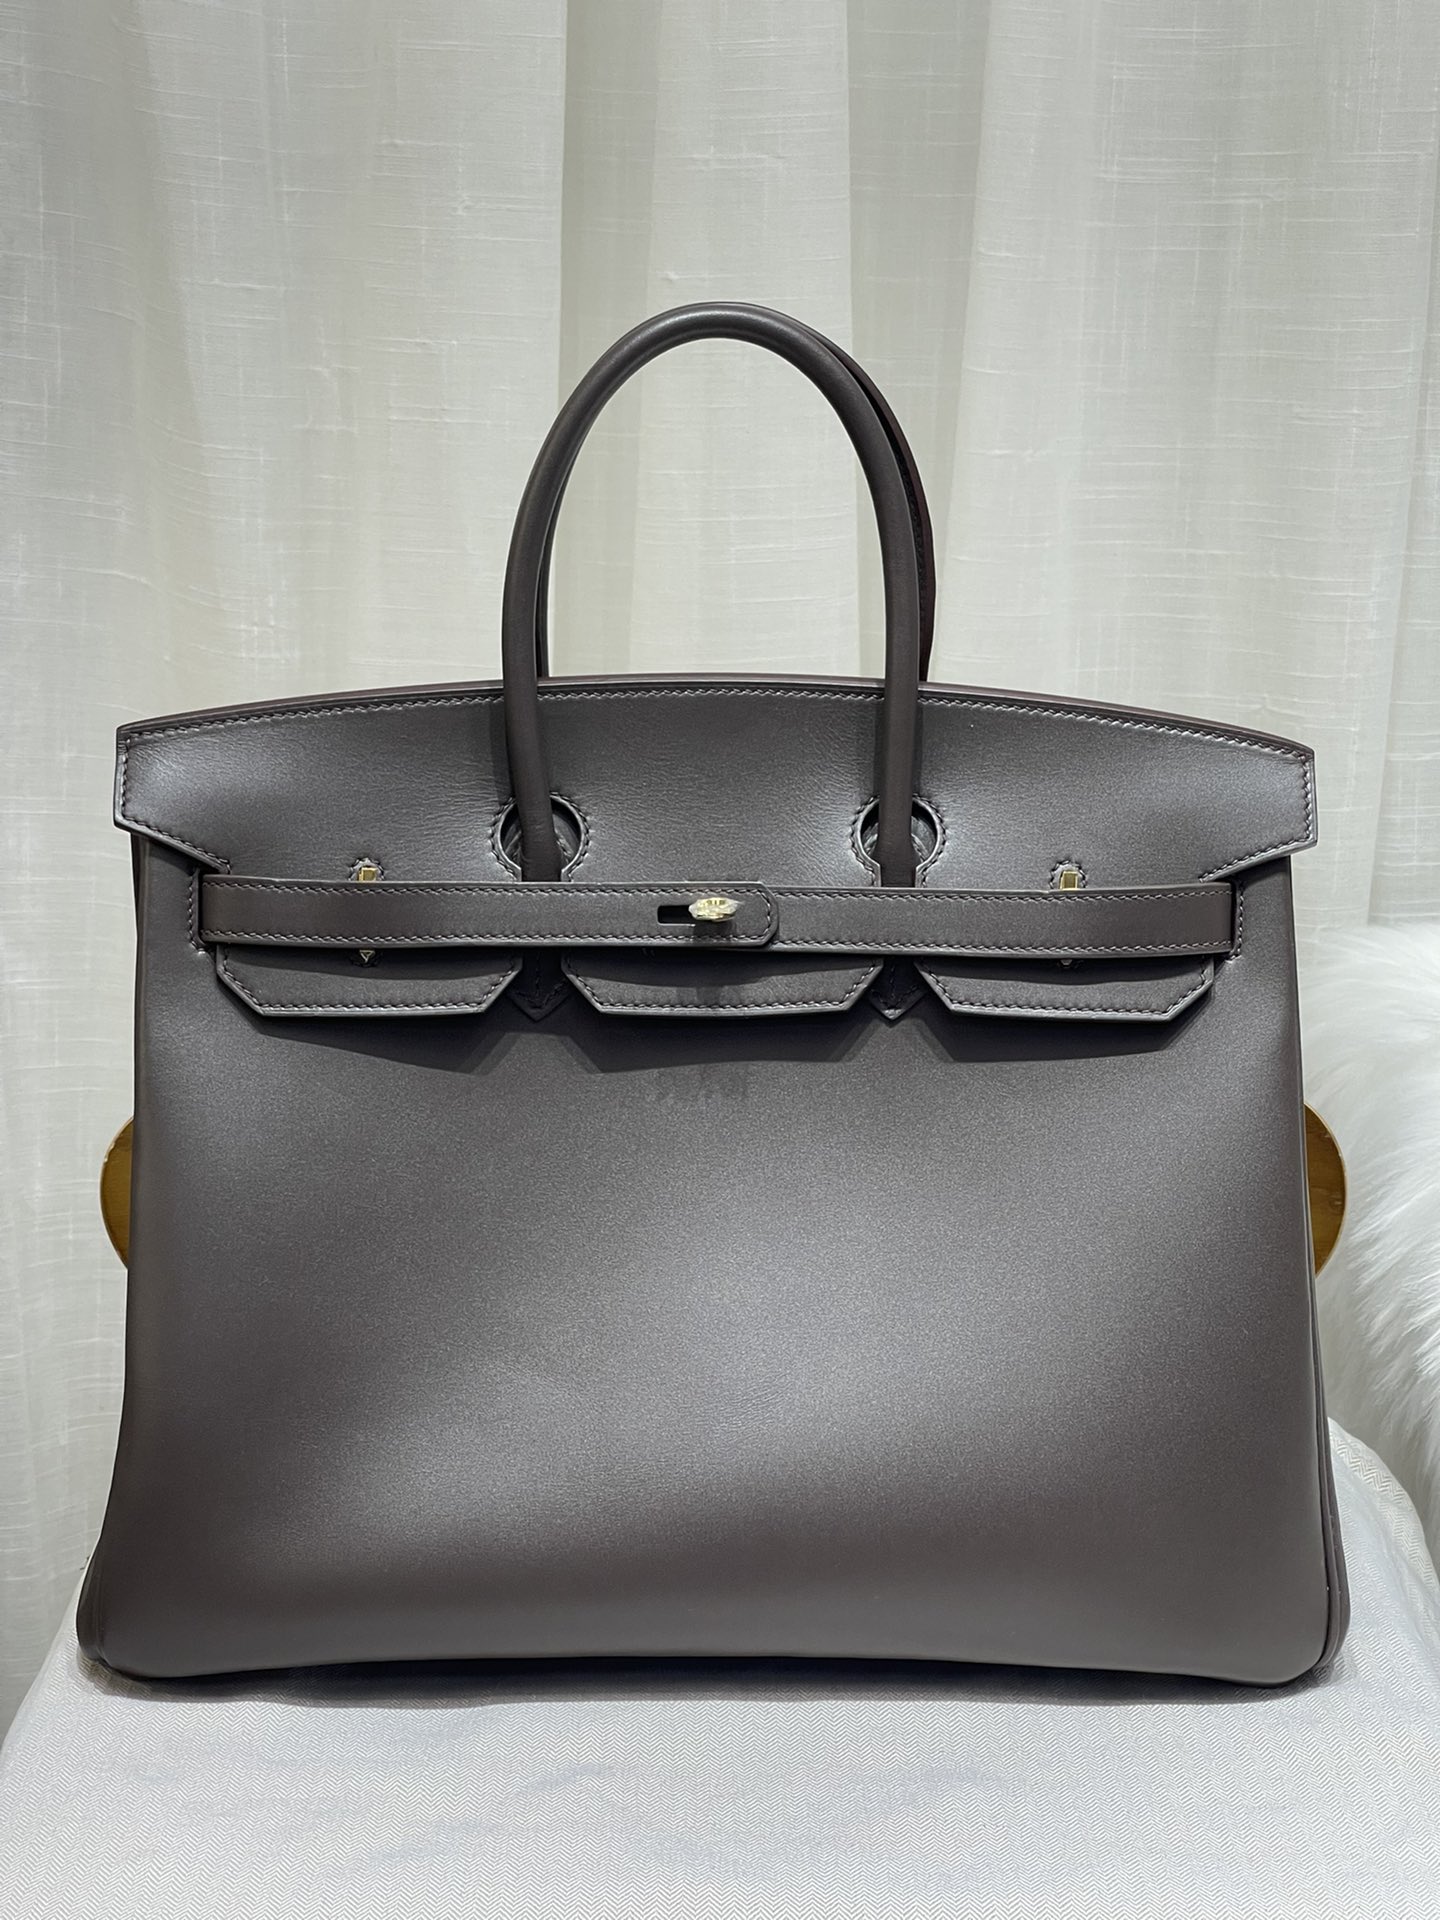 How to buy replica Shop
 Hermes Birkin Bags Handbags